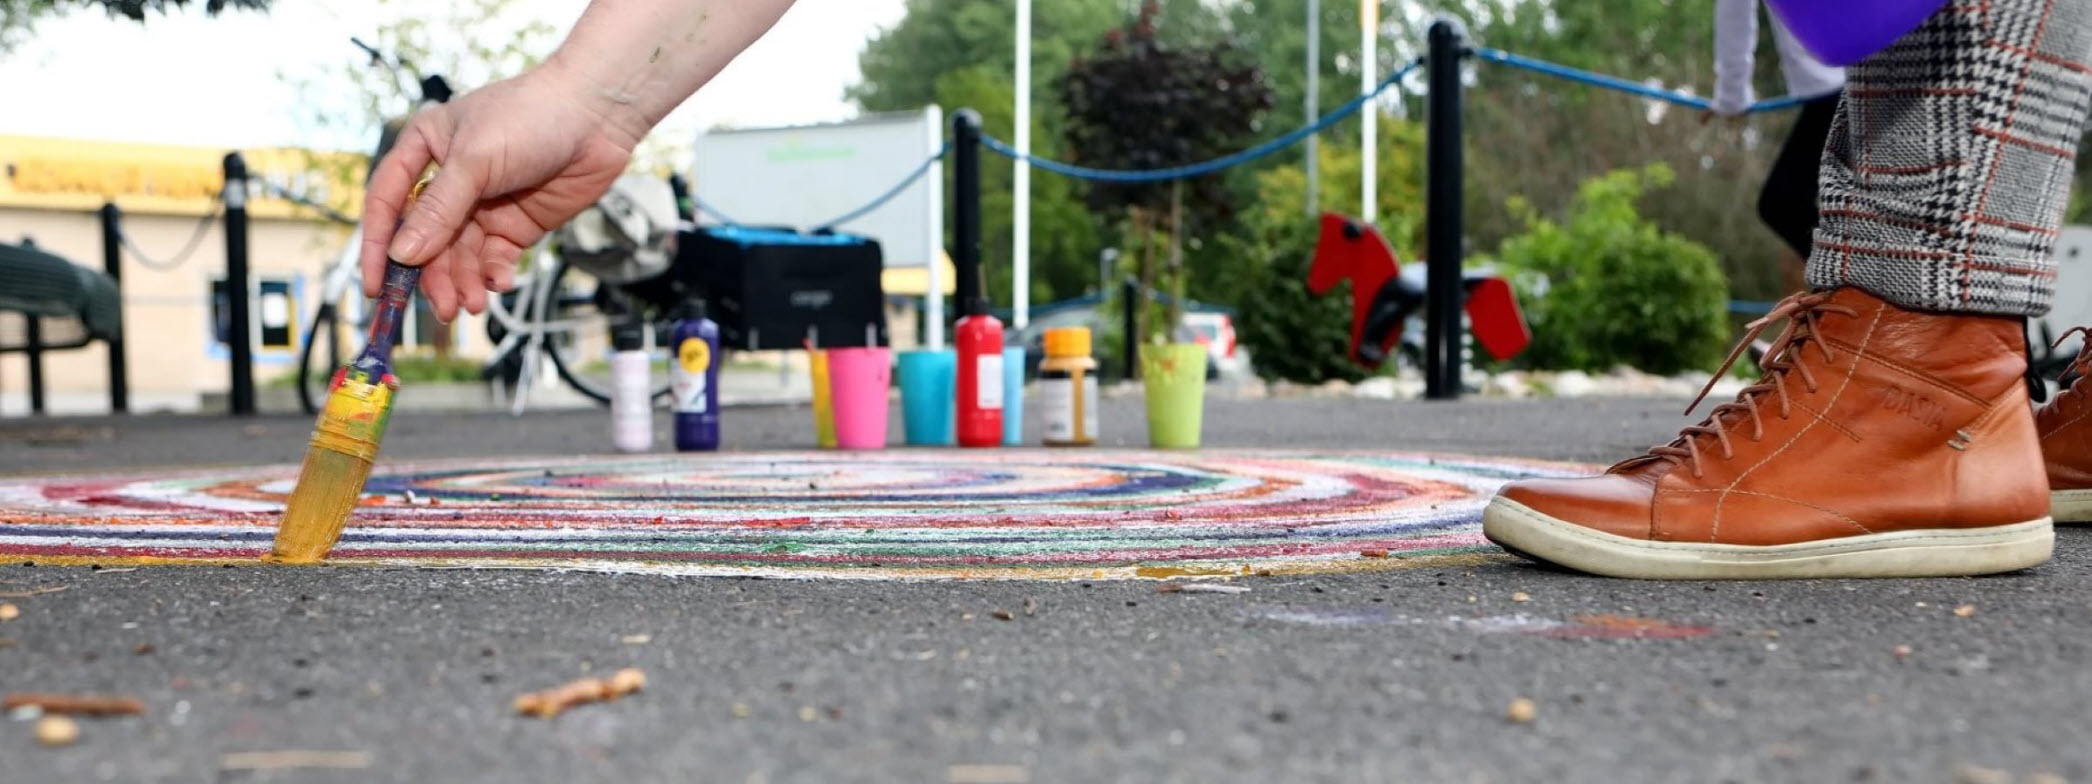 En person målar ett konstverk på asfalten